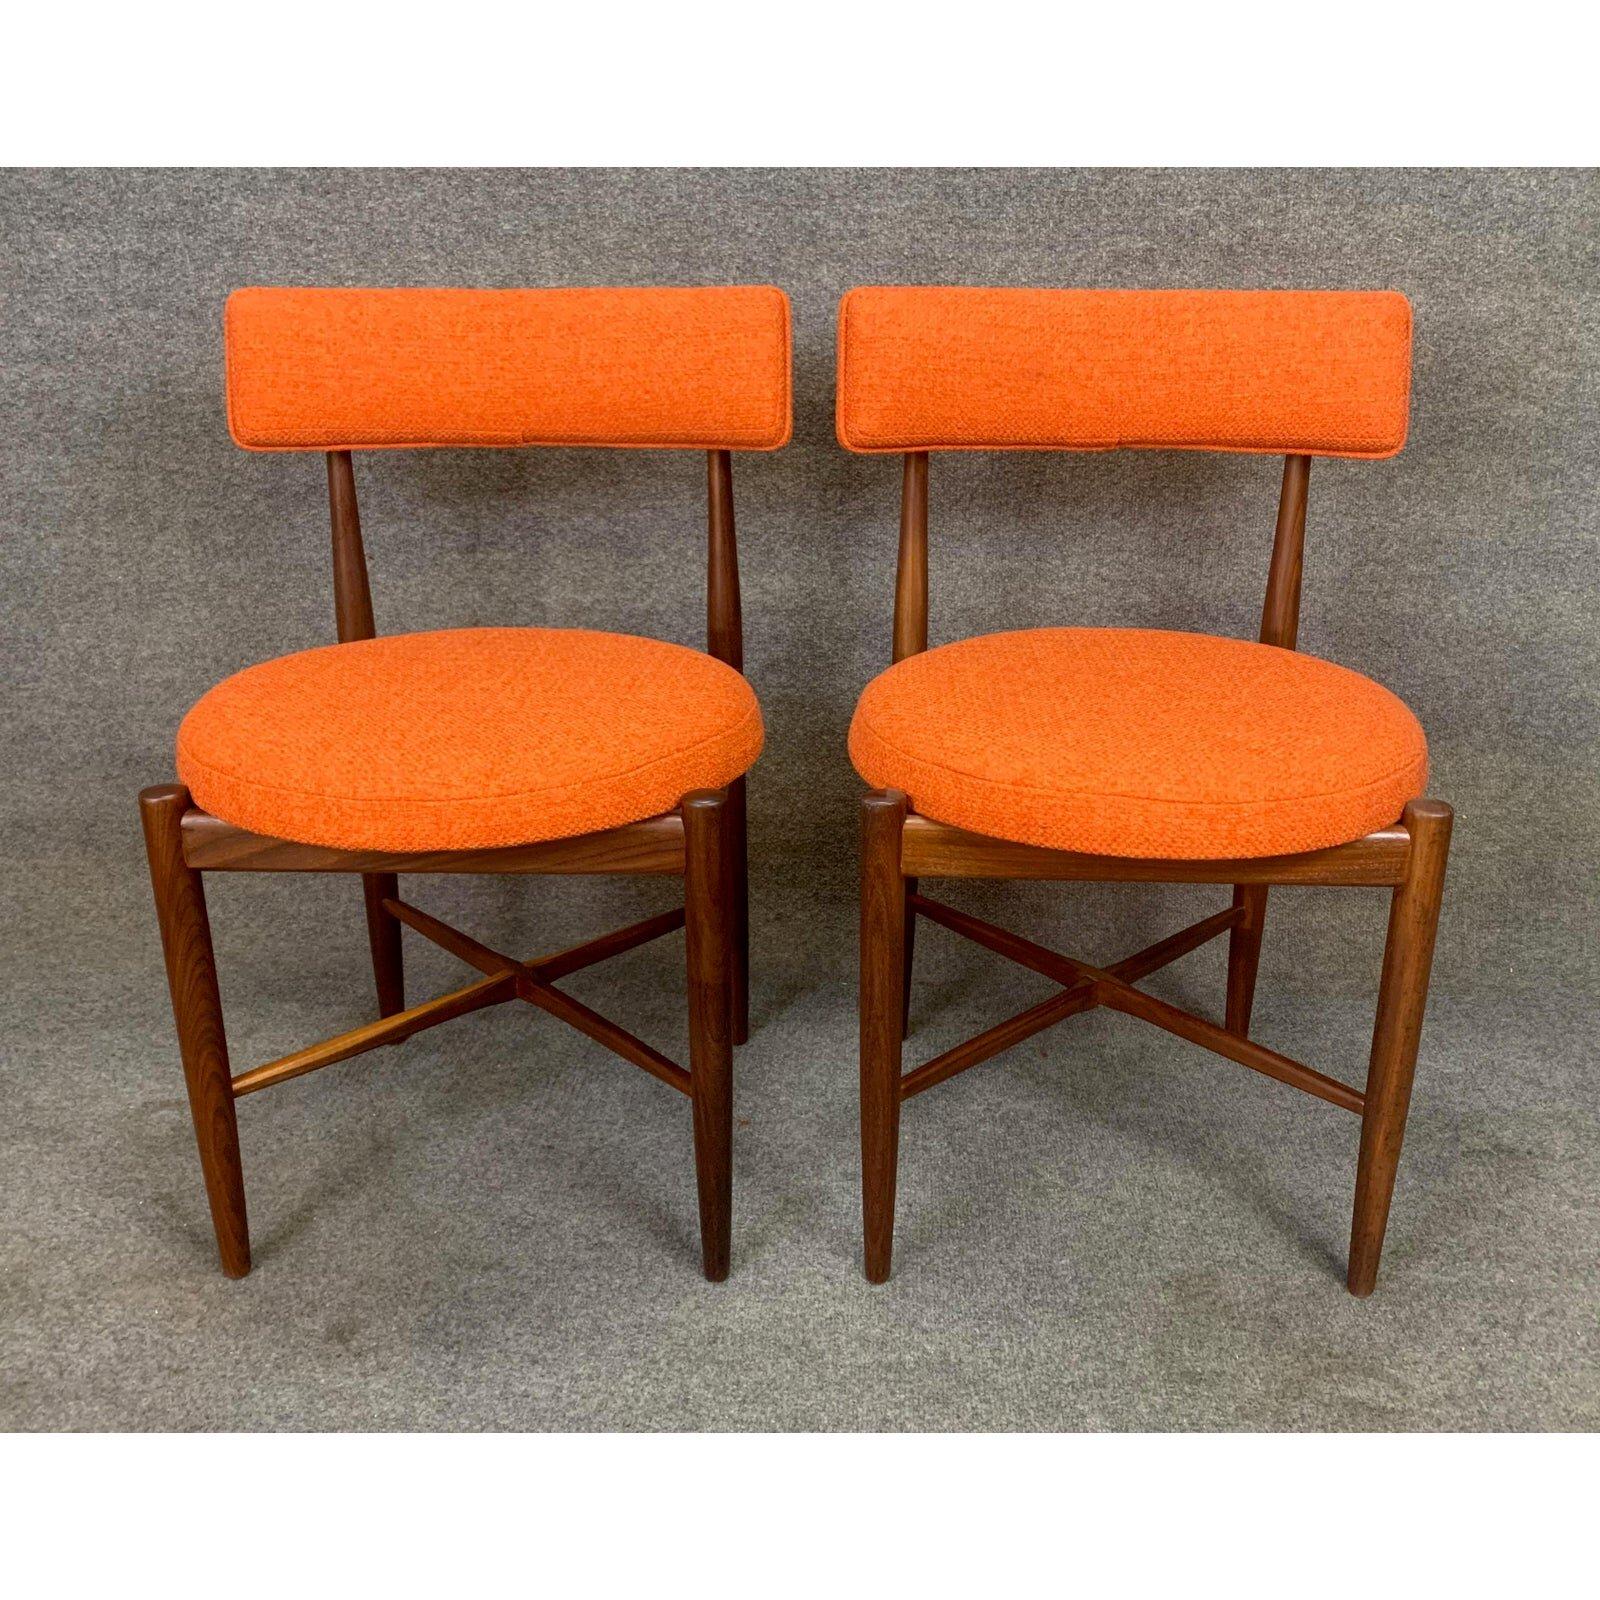 Woodwork Pair of Vintage British Mid Century Modern Teak Accent Chairs by G Plan